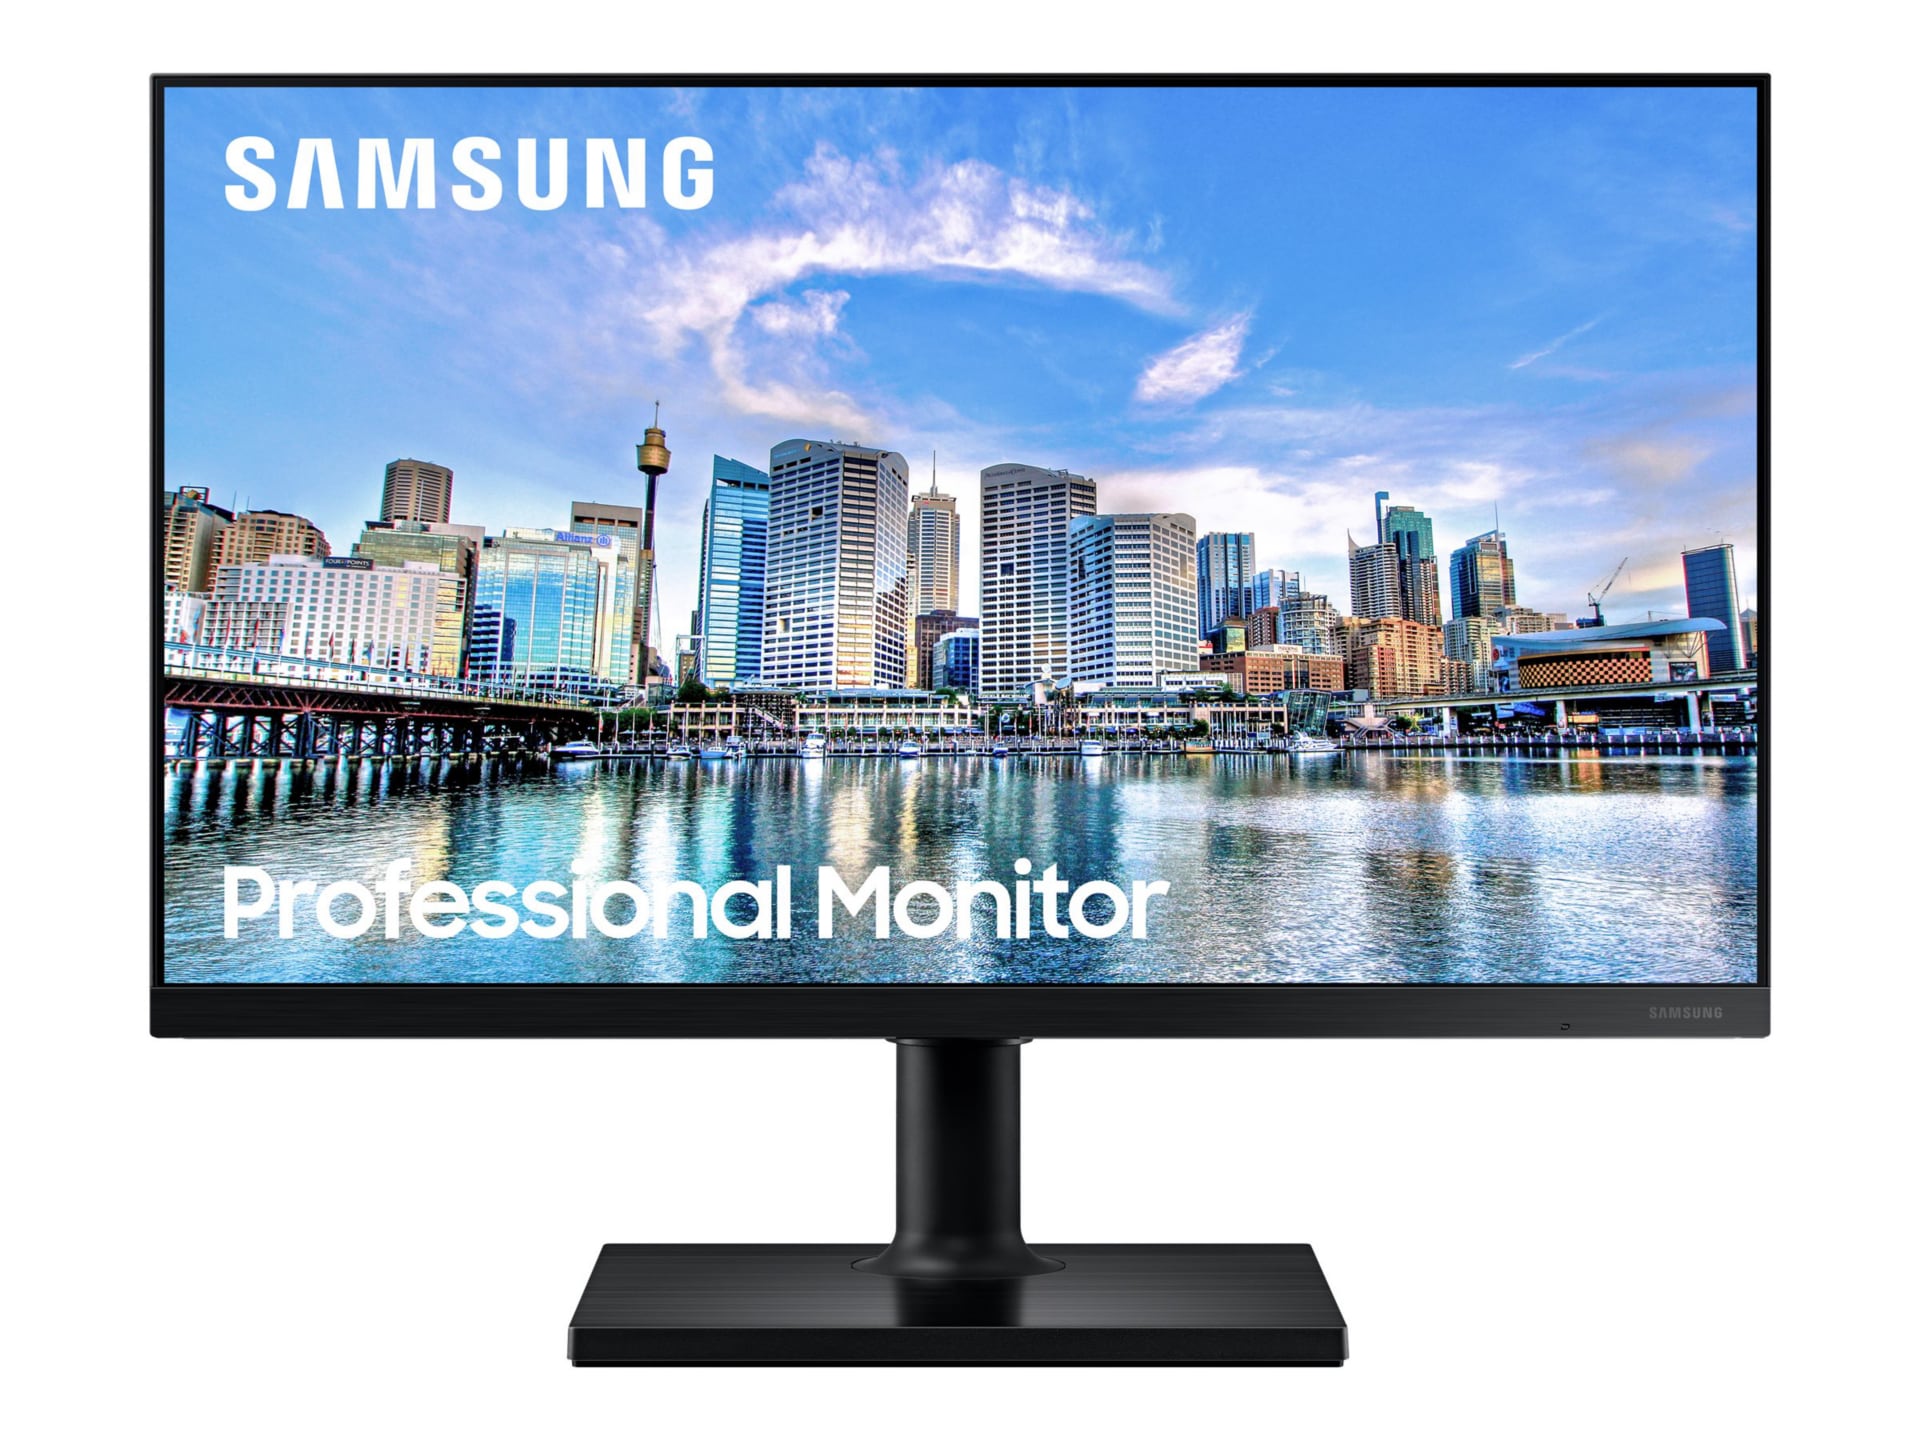 Samsung F24T450FZN - T45F Series - LED monitor - Full HD - 24" - F24T450FZN - Computer - CDW.com